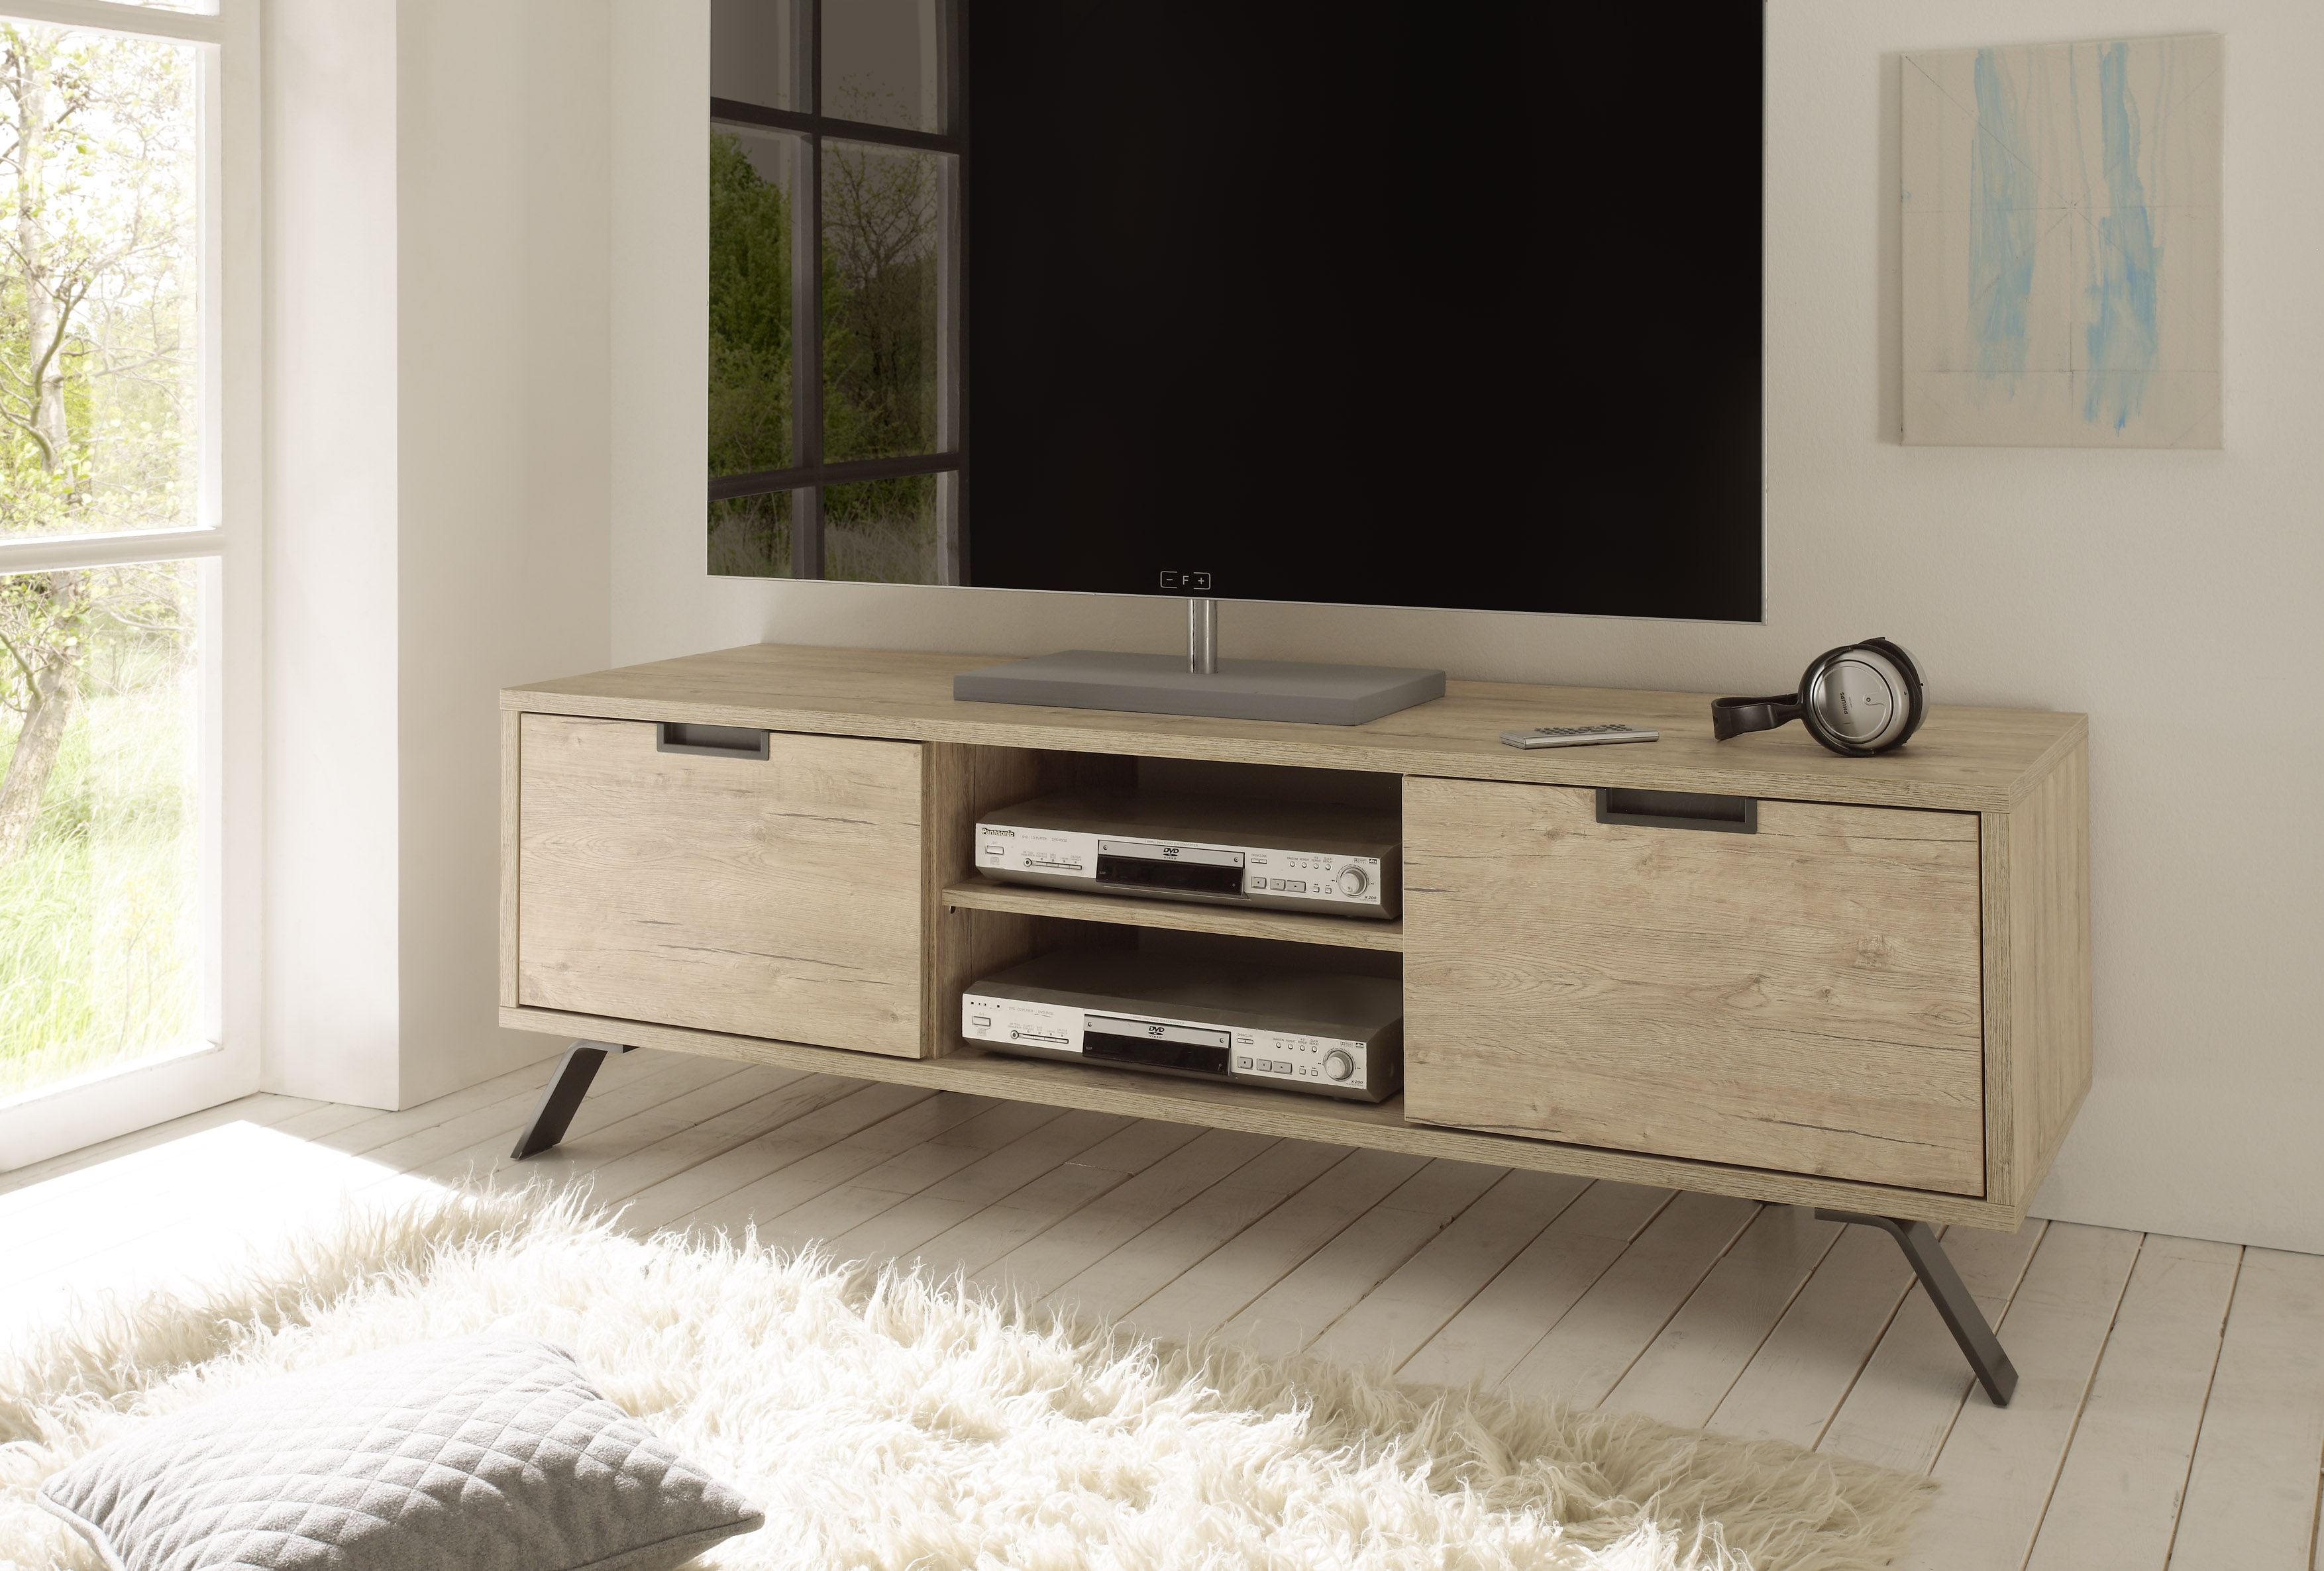 wimper Achteruit Blauwe plek eiken kleurige tv meubels kopen? | meubeldeals.nl